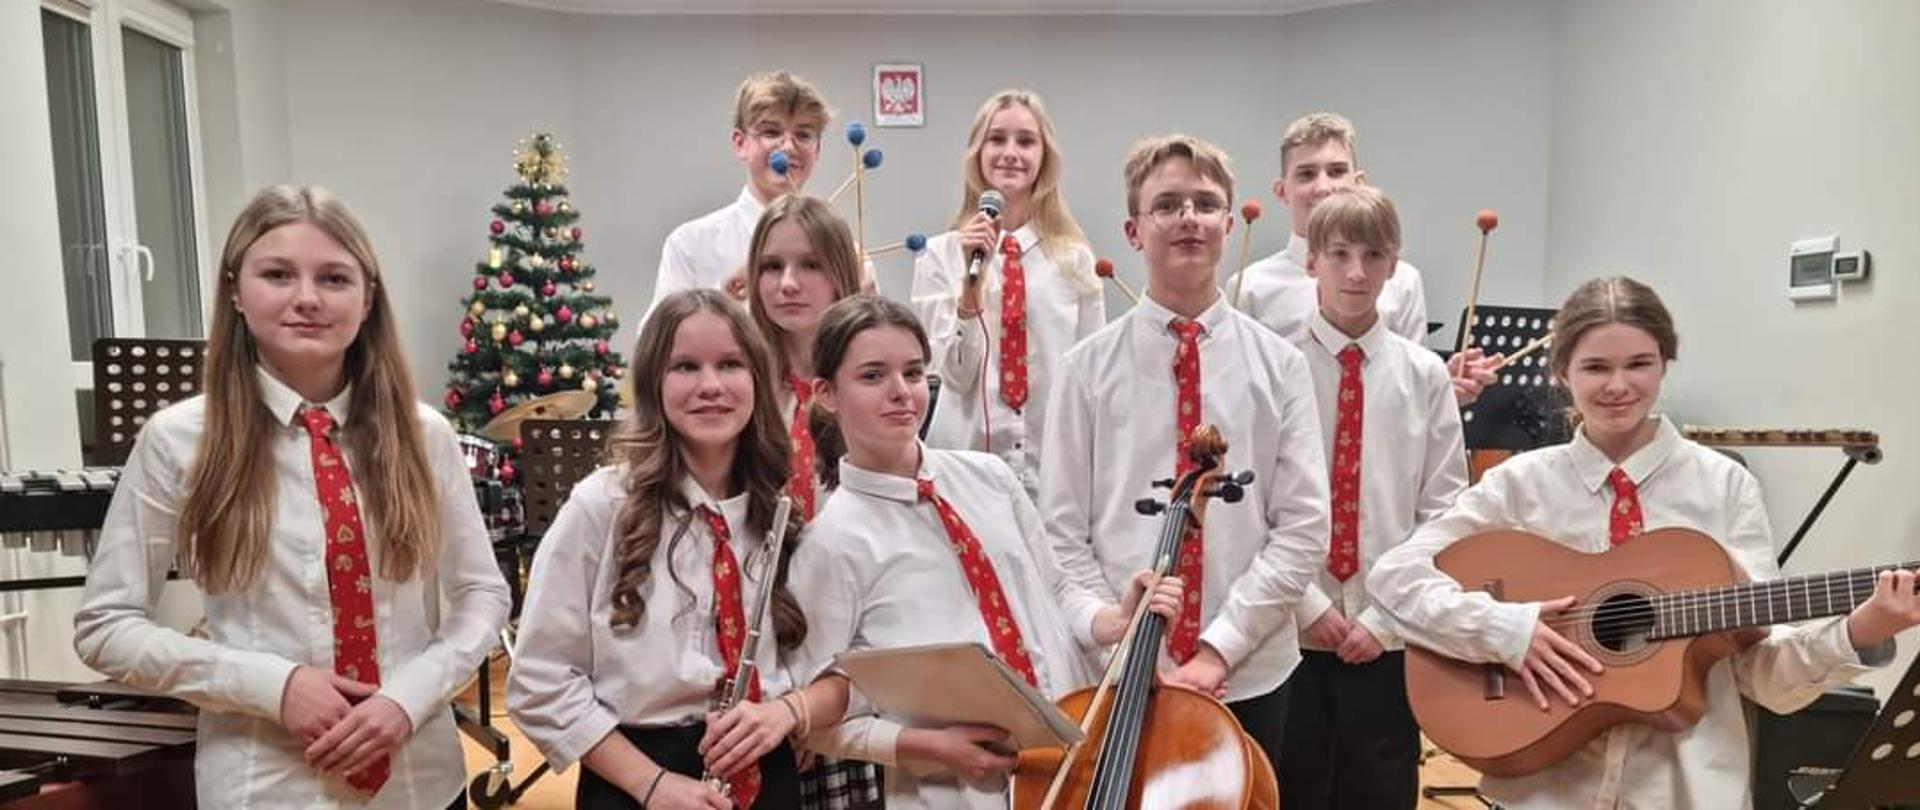 na zdjęciu grupa młodzieży w białych koszulacj i czerwonych krwatach z instrumentami w rękach